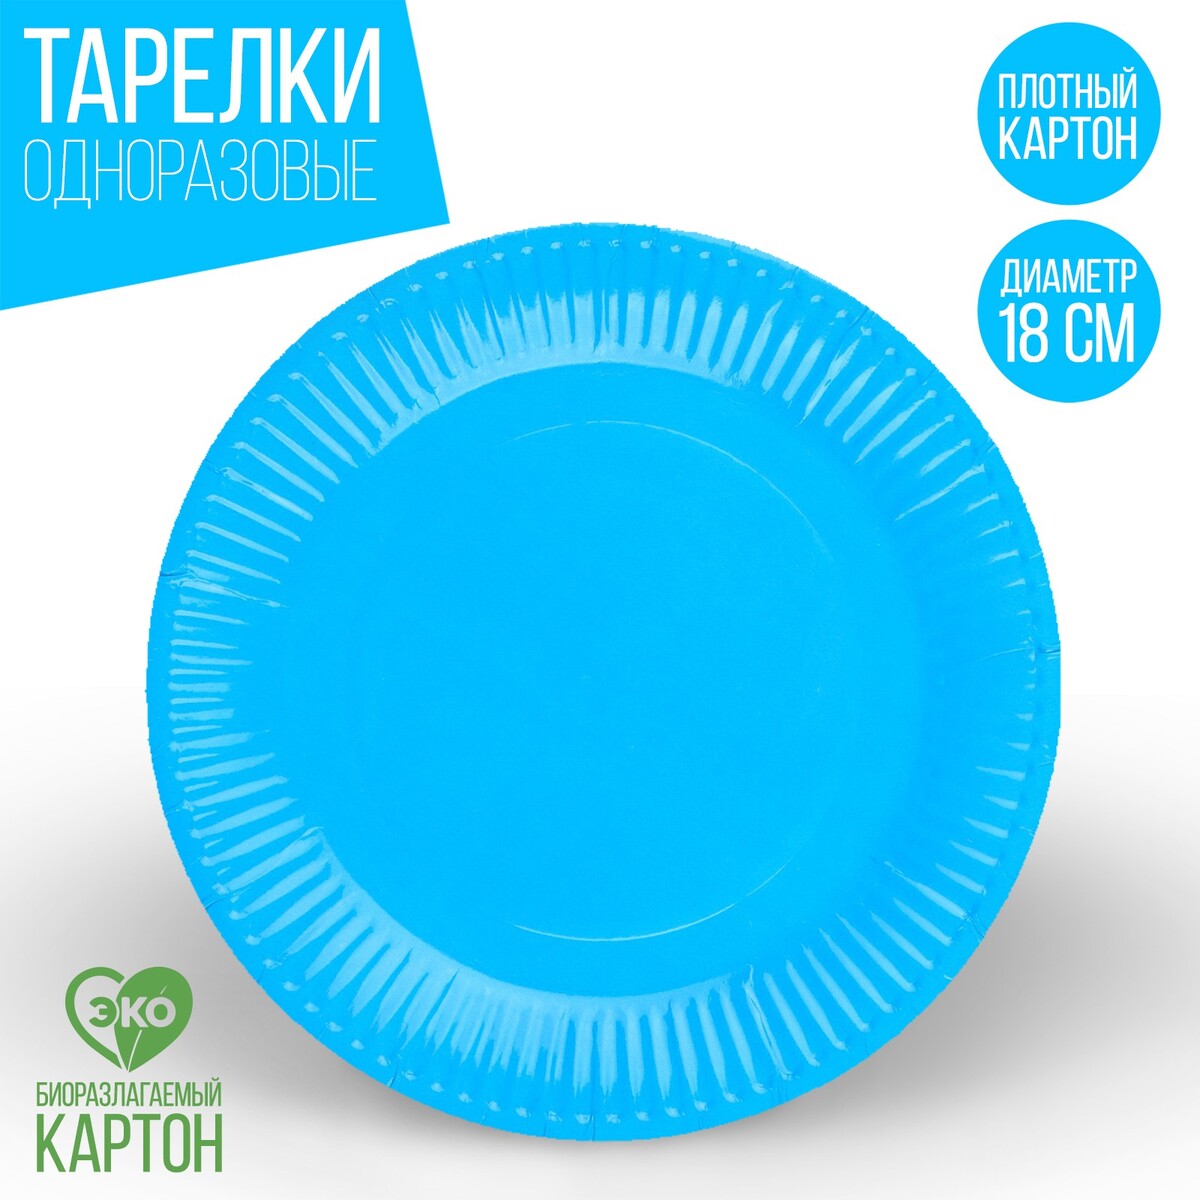 Тарелка одноразовая бумажная однотонная, голубой цвет 18 см, набор 10 штук тарелка бумажная однотонная 18 см в наборе 10 шт желтый